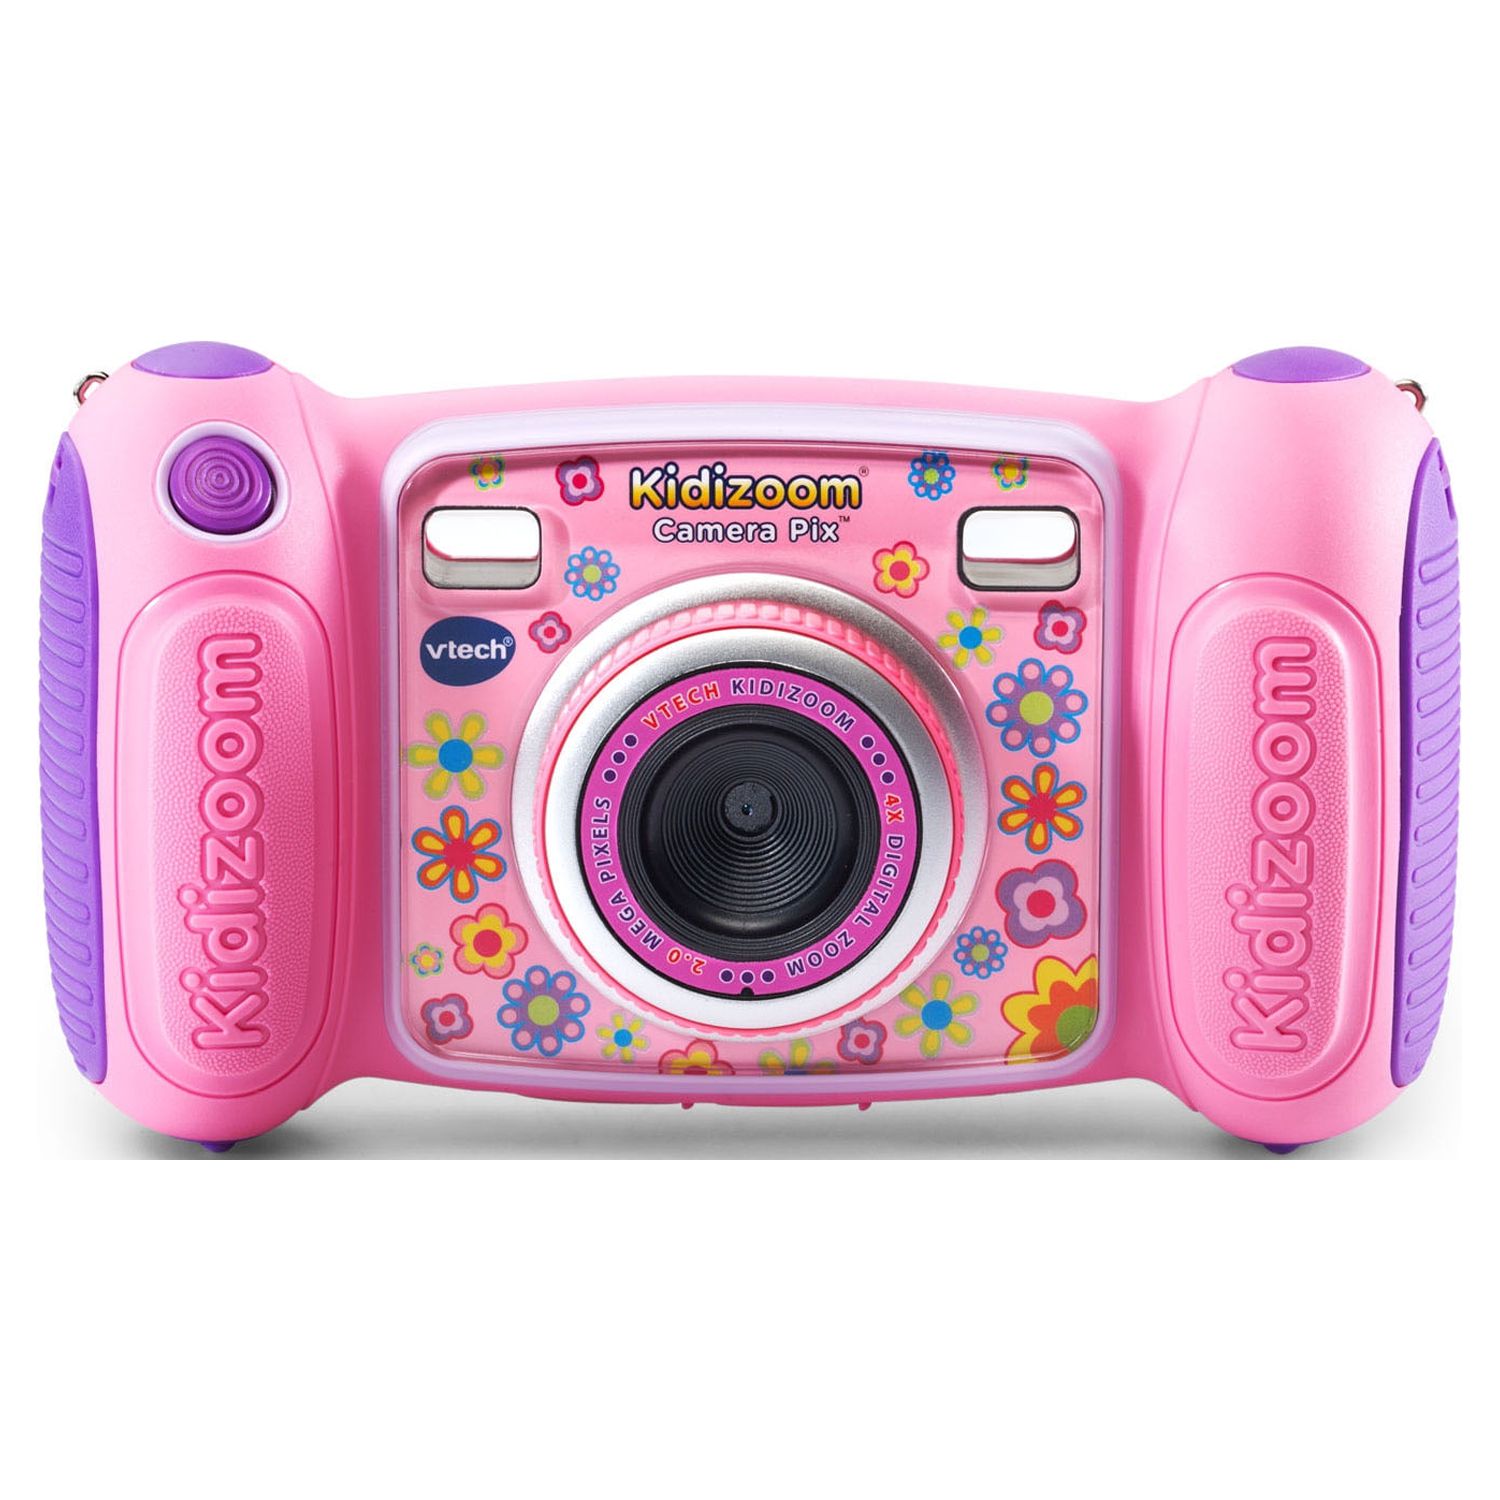 VTech KidiZoom Camera Pix, Real Digital Camera for Kids, Pink - image 1 of 9